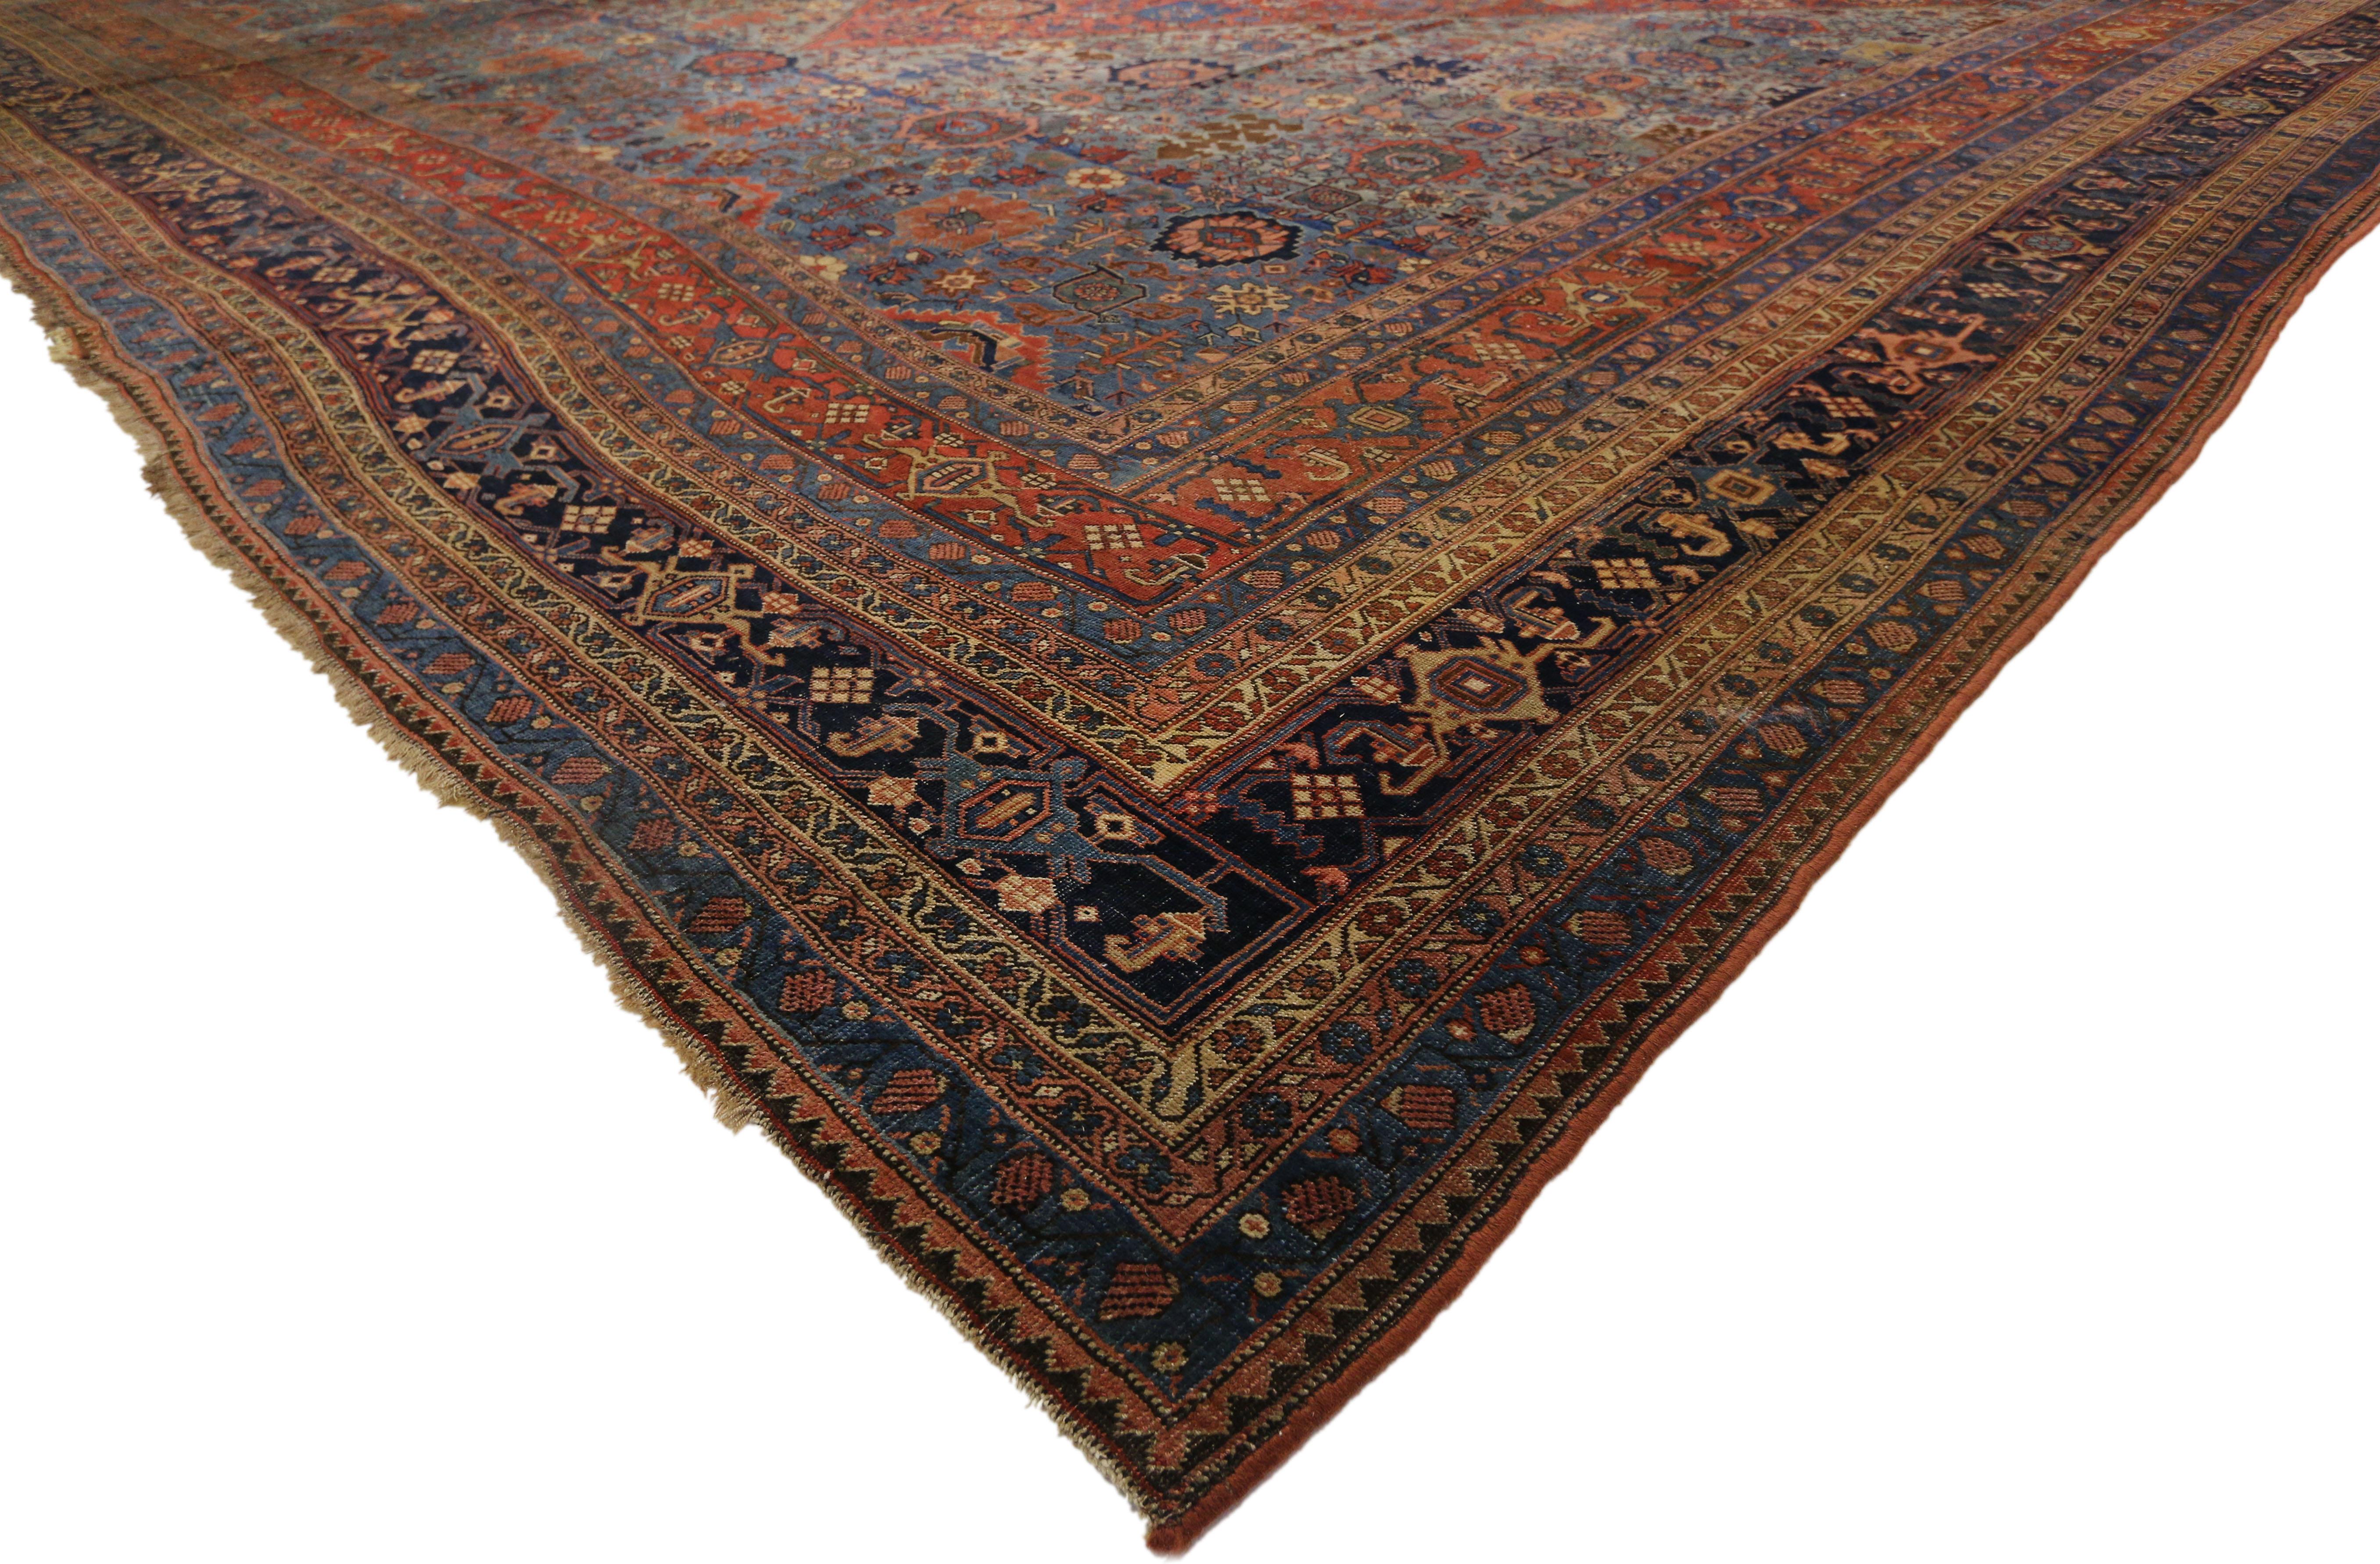 77327 Antiker persischer Halwai (Halvei) Bijar Palace Teppich im amerikanischen Kolonialstil. Mit einem durchgehenden geradlinigen Muster und einer lebhaften Farbpalette hebt dieser handgeknüpfte antike persische Halvai Bidjar Palastteppich aus